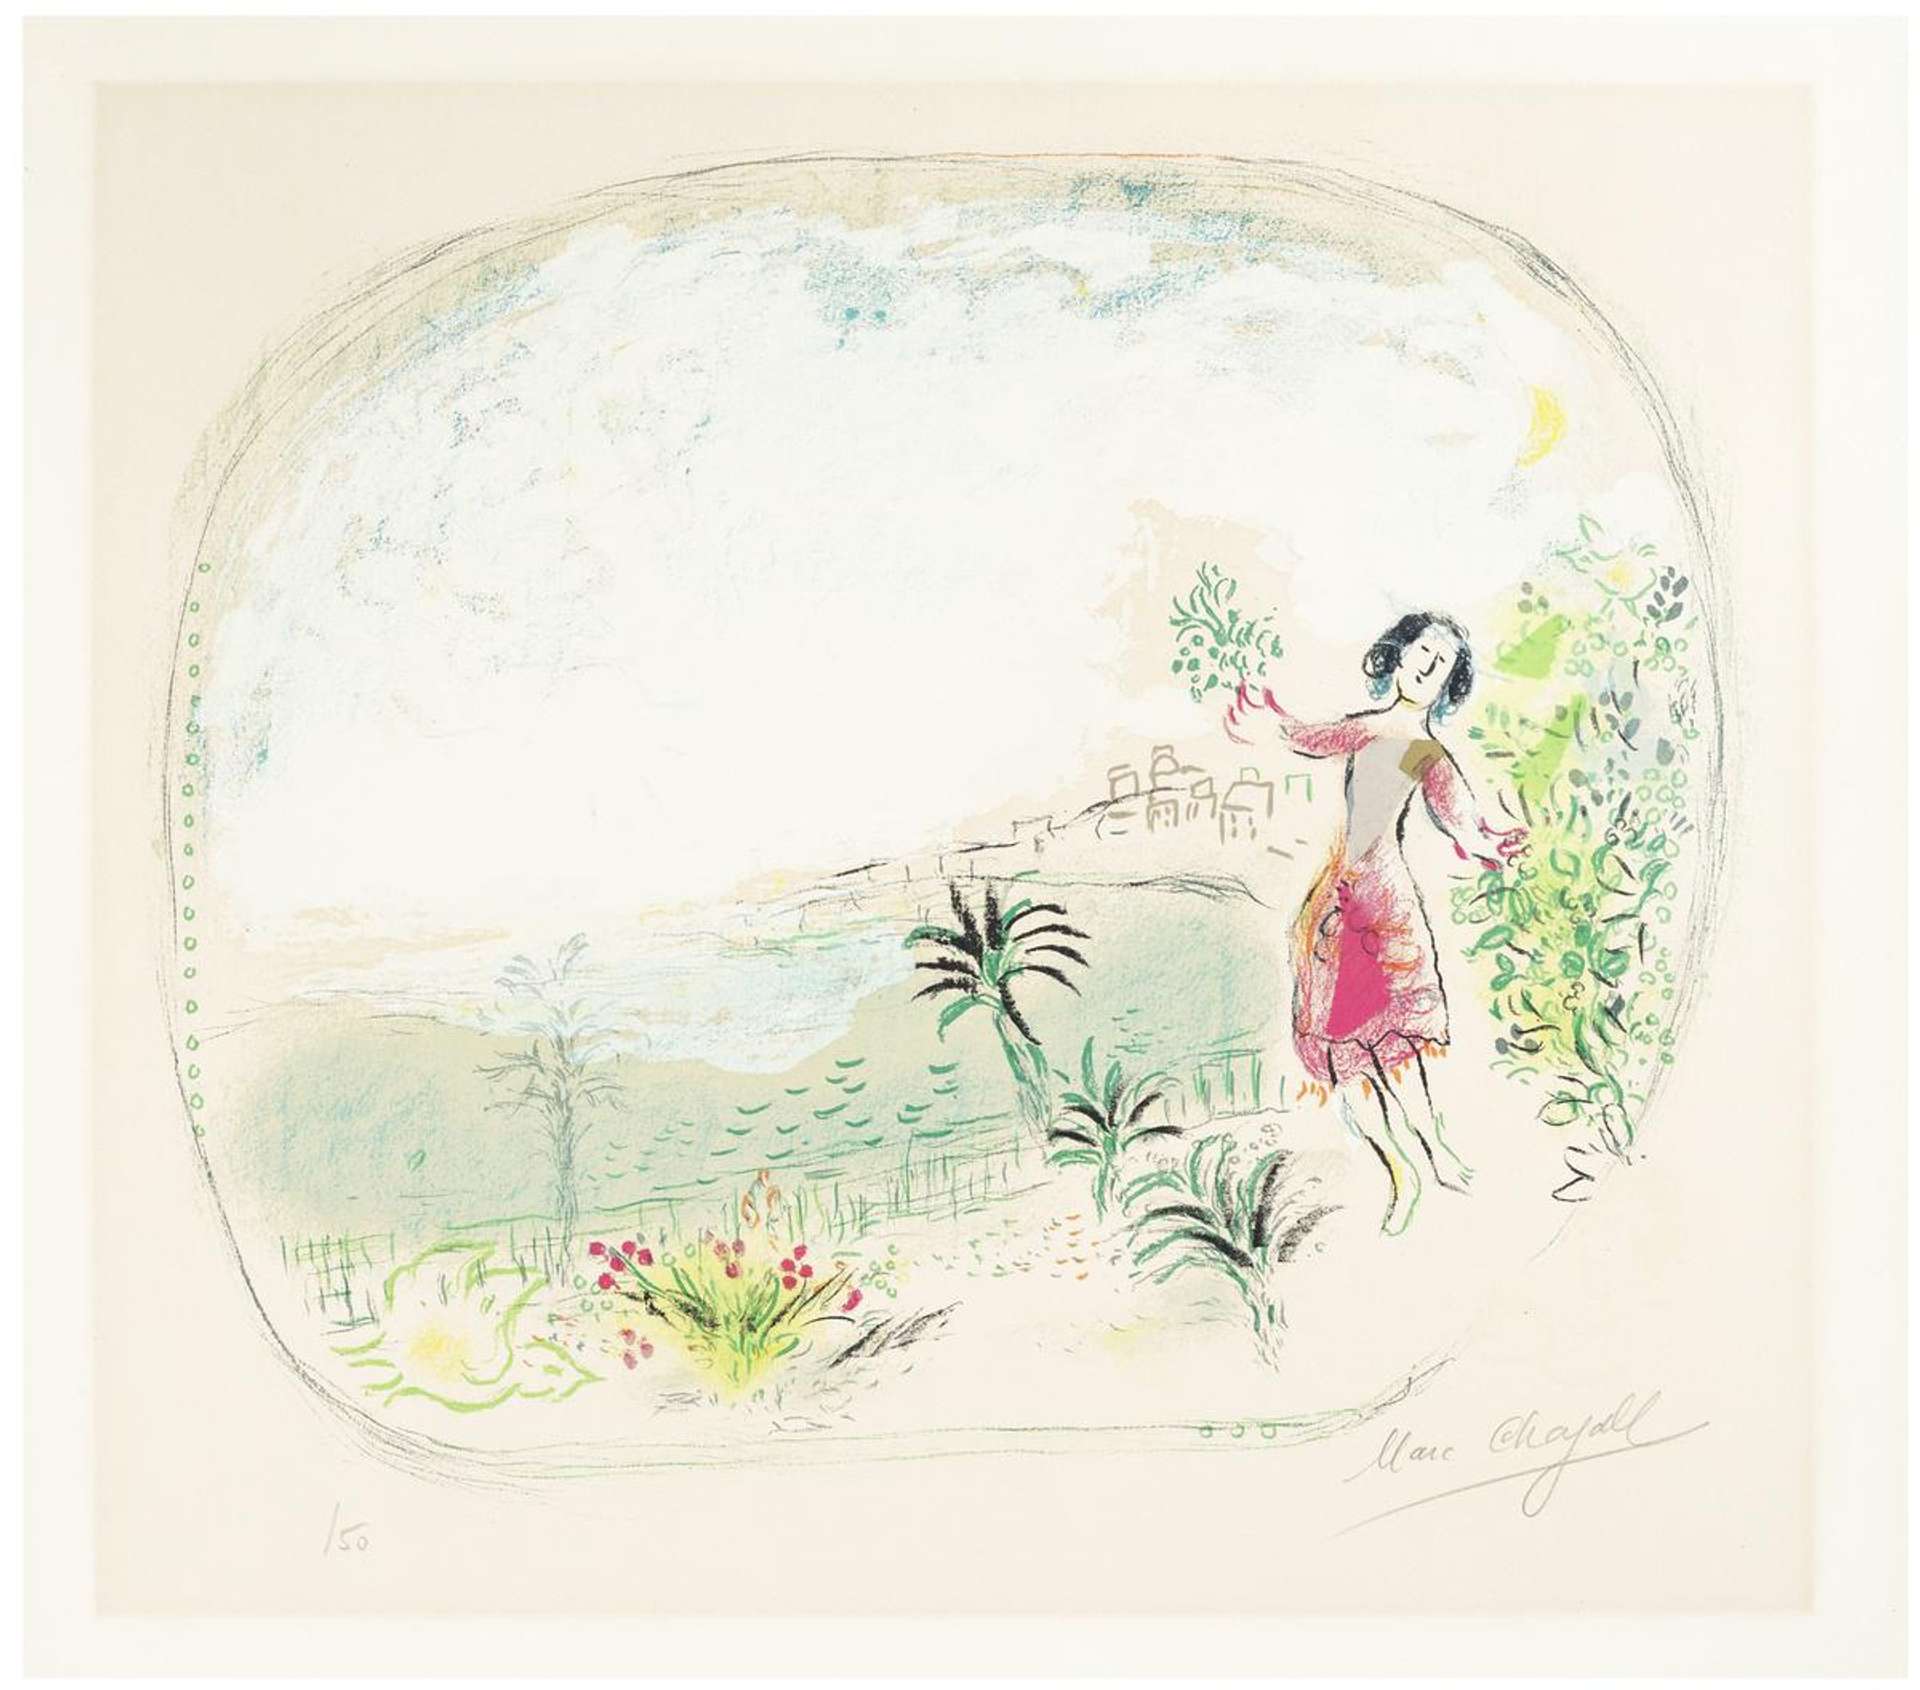 La Baie Des Anges (Côte d'Azur) - Signed Print by Marc Chagall 1967 - MyArtBroker